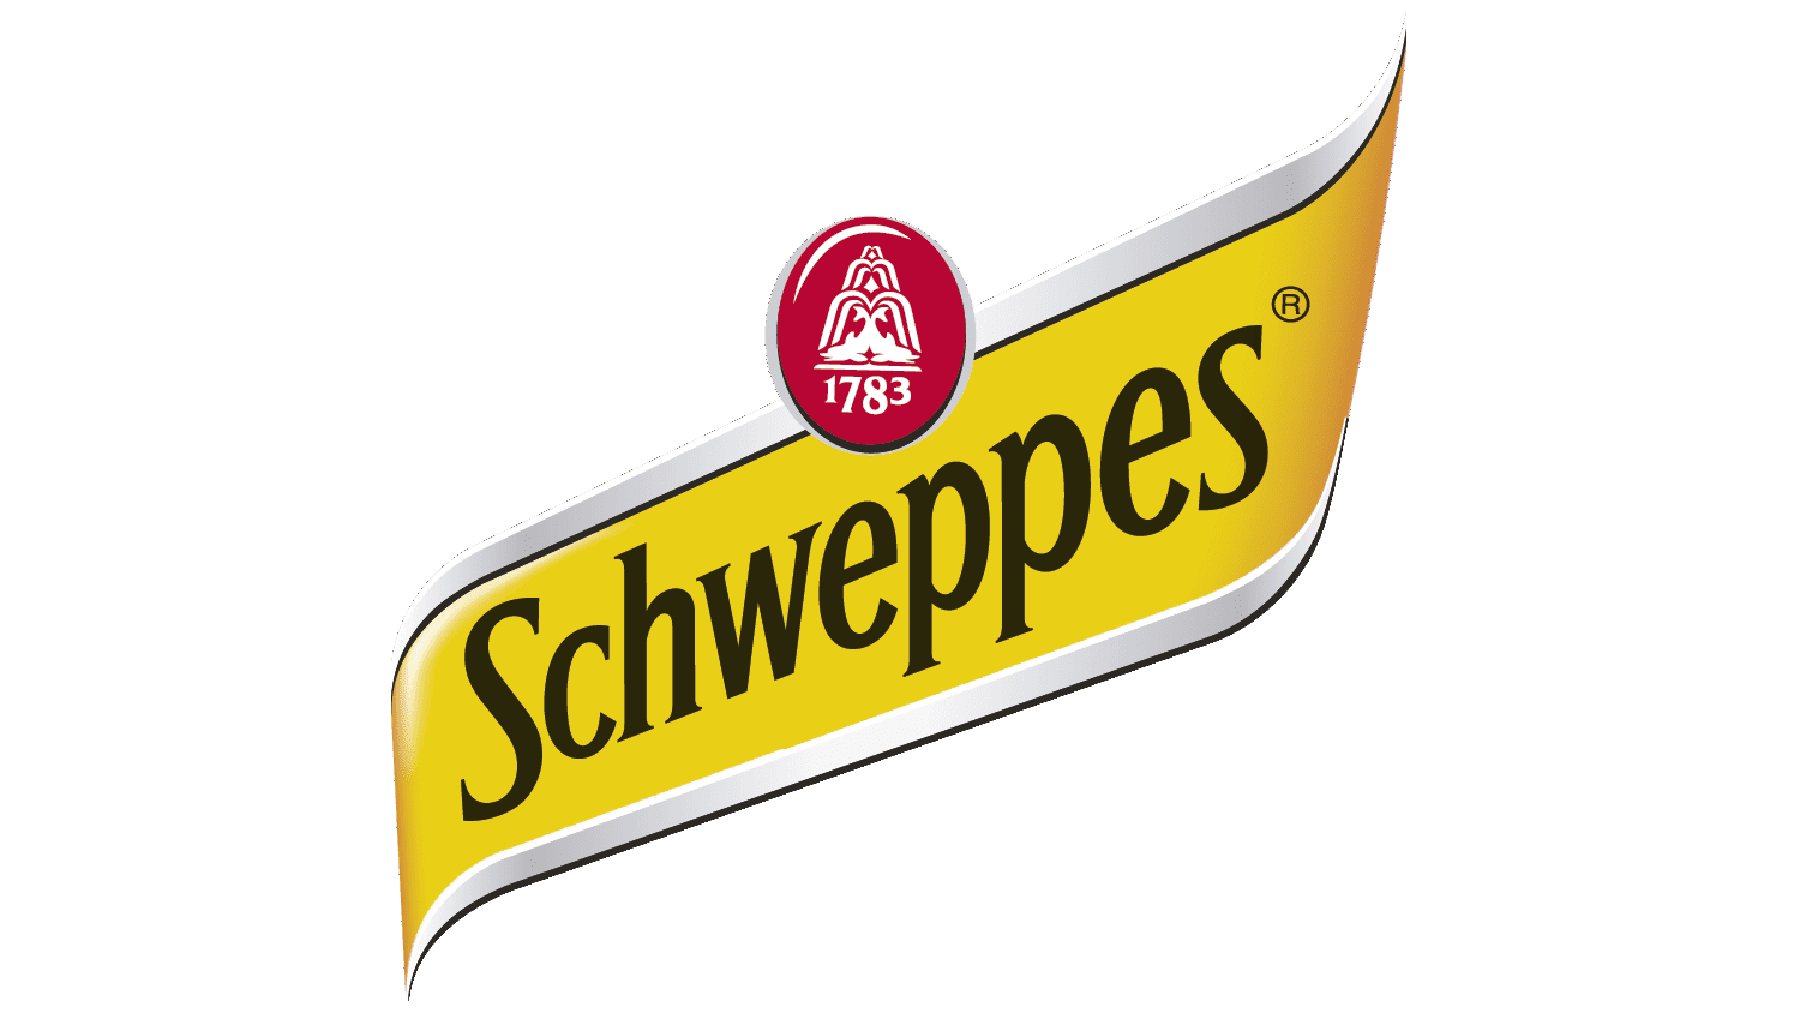 Schweppes-Logo-2010